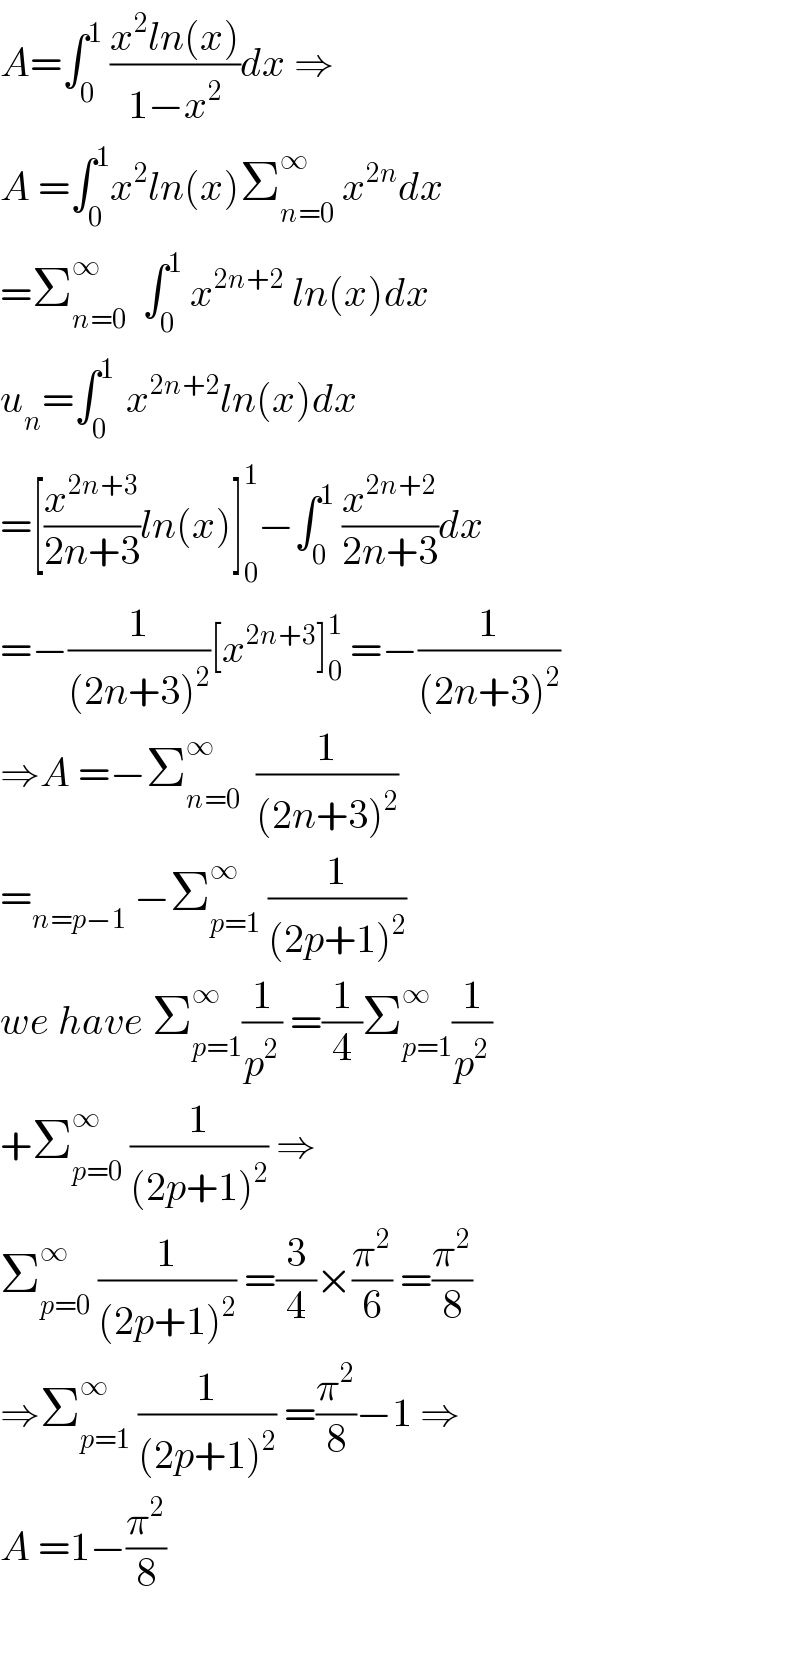 A=∫_0 ^1  ((x^2 ln(x))/(1−x^2 ))dx ⇒  A =∫_0 ^1 x^2 ln(x)Σ_(n=0) ^∞  x^(2n) dx  =Σ_(n=0) ^∞   ∫_0 ^1  x^(2n+2)  ln(x)dx  u_n =∫_0 ^(1 )  x^(2n+2) ln(x)dx  =[(x^(2n+3) /(2n+3))ln(x)]_0 ^1 −∫_0 ^1  (x^(2n+2) /(2n+3))dx  =−(1/((2n+3)^2 ))[x^(2n+3) ]_0 ^1  =−(1/((2n+3)^2 ))  ⇒A =−Σ_(n=0) ^(∞ )   (1/((2n+3)^2 ))  =_(n=p−1)  −Σ_(p=1) ^(∞ )  (1/((2p+1)^2 ))  we have Σ_(p=1) ^∞ (1/p^2 ) =(1/4)Σ_(p=1) ^∞ (1/p^2 )  +Σ_(p=0) ^∞  (1/((2p+1)^2 )) ⇒  Σ_(p=0) ^∞  (1/((2p+1)^2 )) =(3/4)×(π^2 /6) =(π^2 /8)  ⇒Σ_(p=1) ^∞  (1/((2p+1)^2 )) =(π^2 /8)−1 ⇒  A =1−(π^2 /8)    